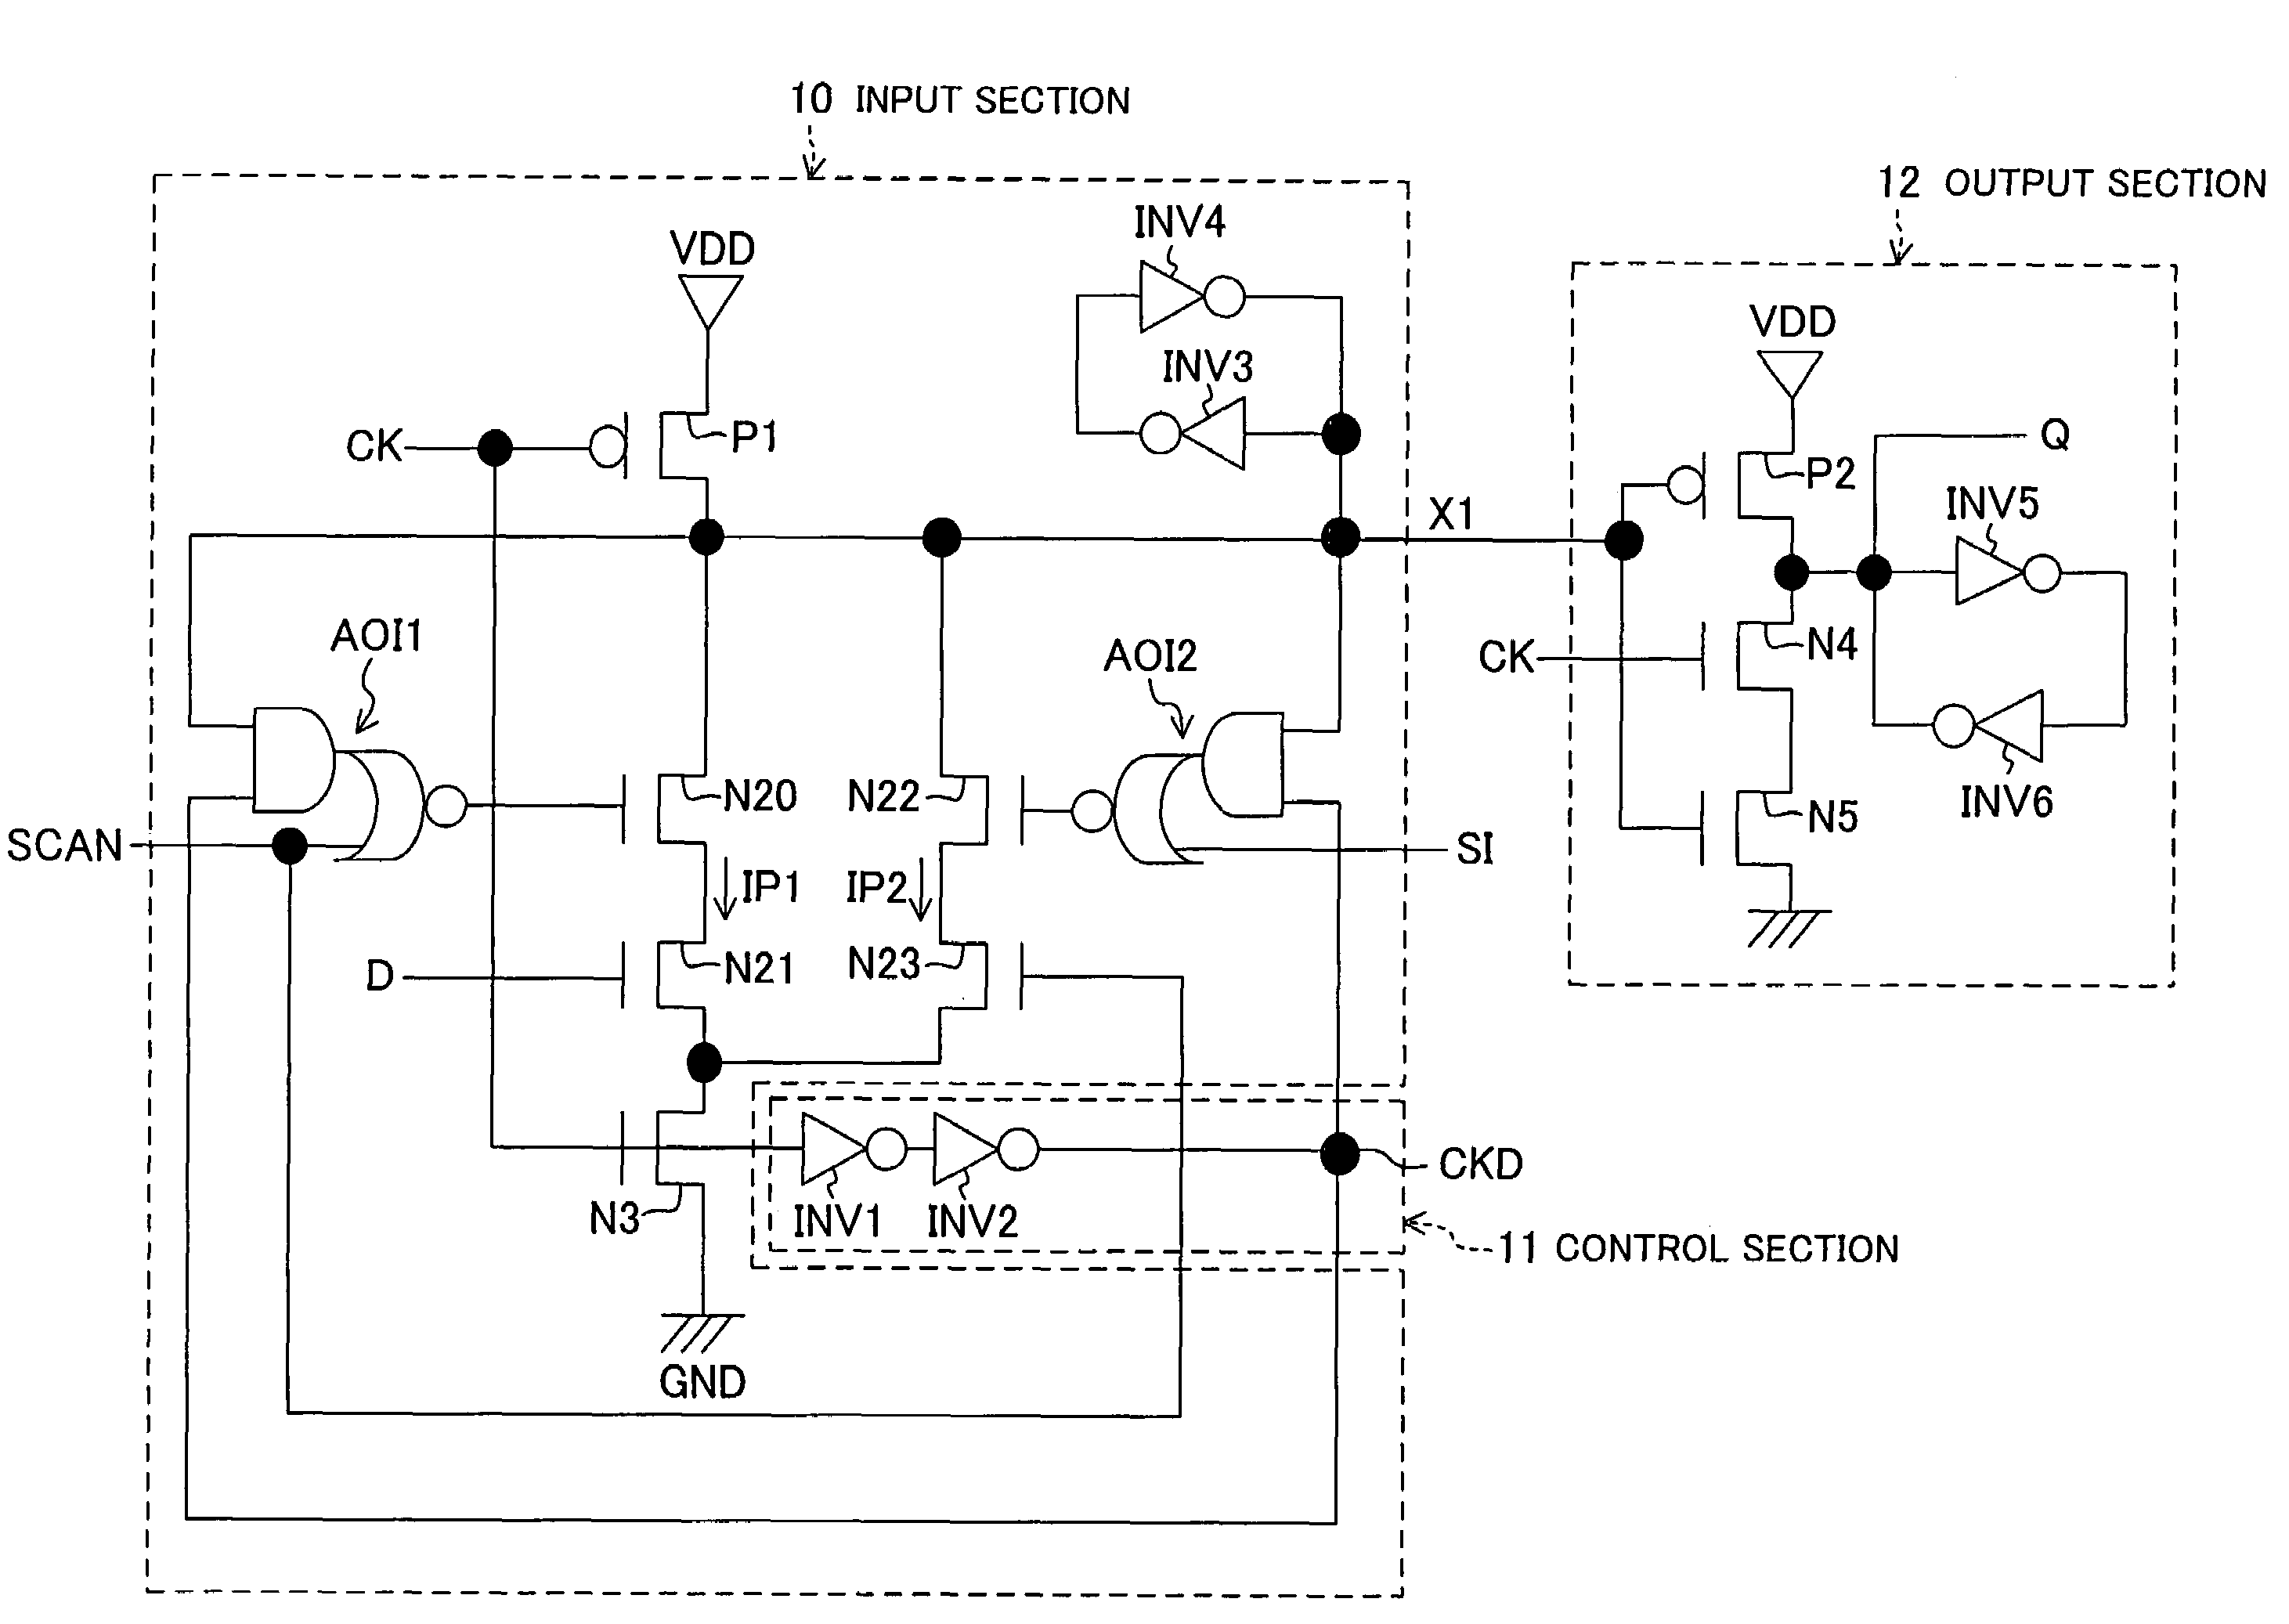 Flip-flop circuit